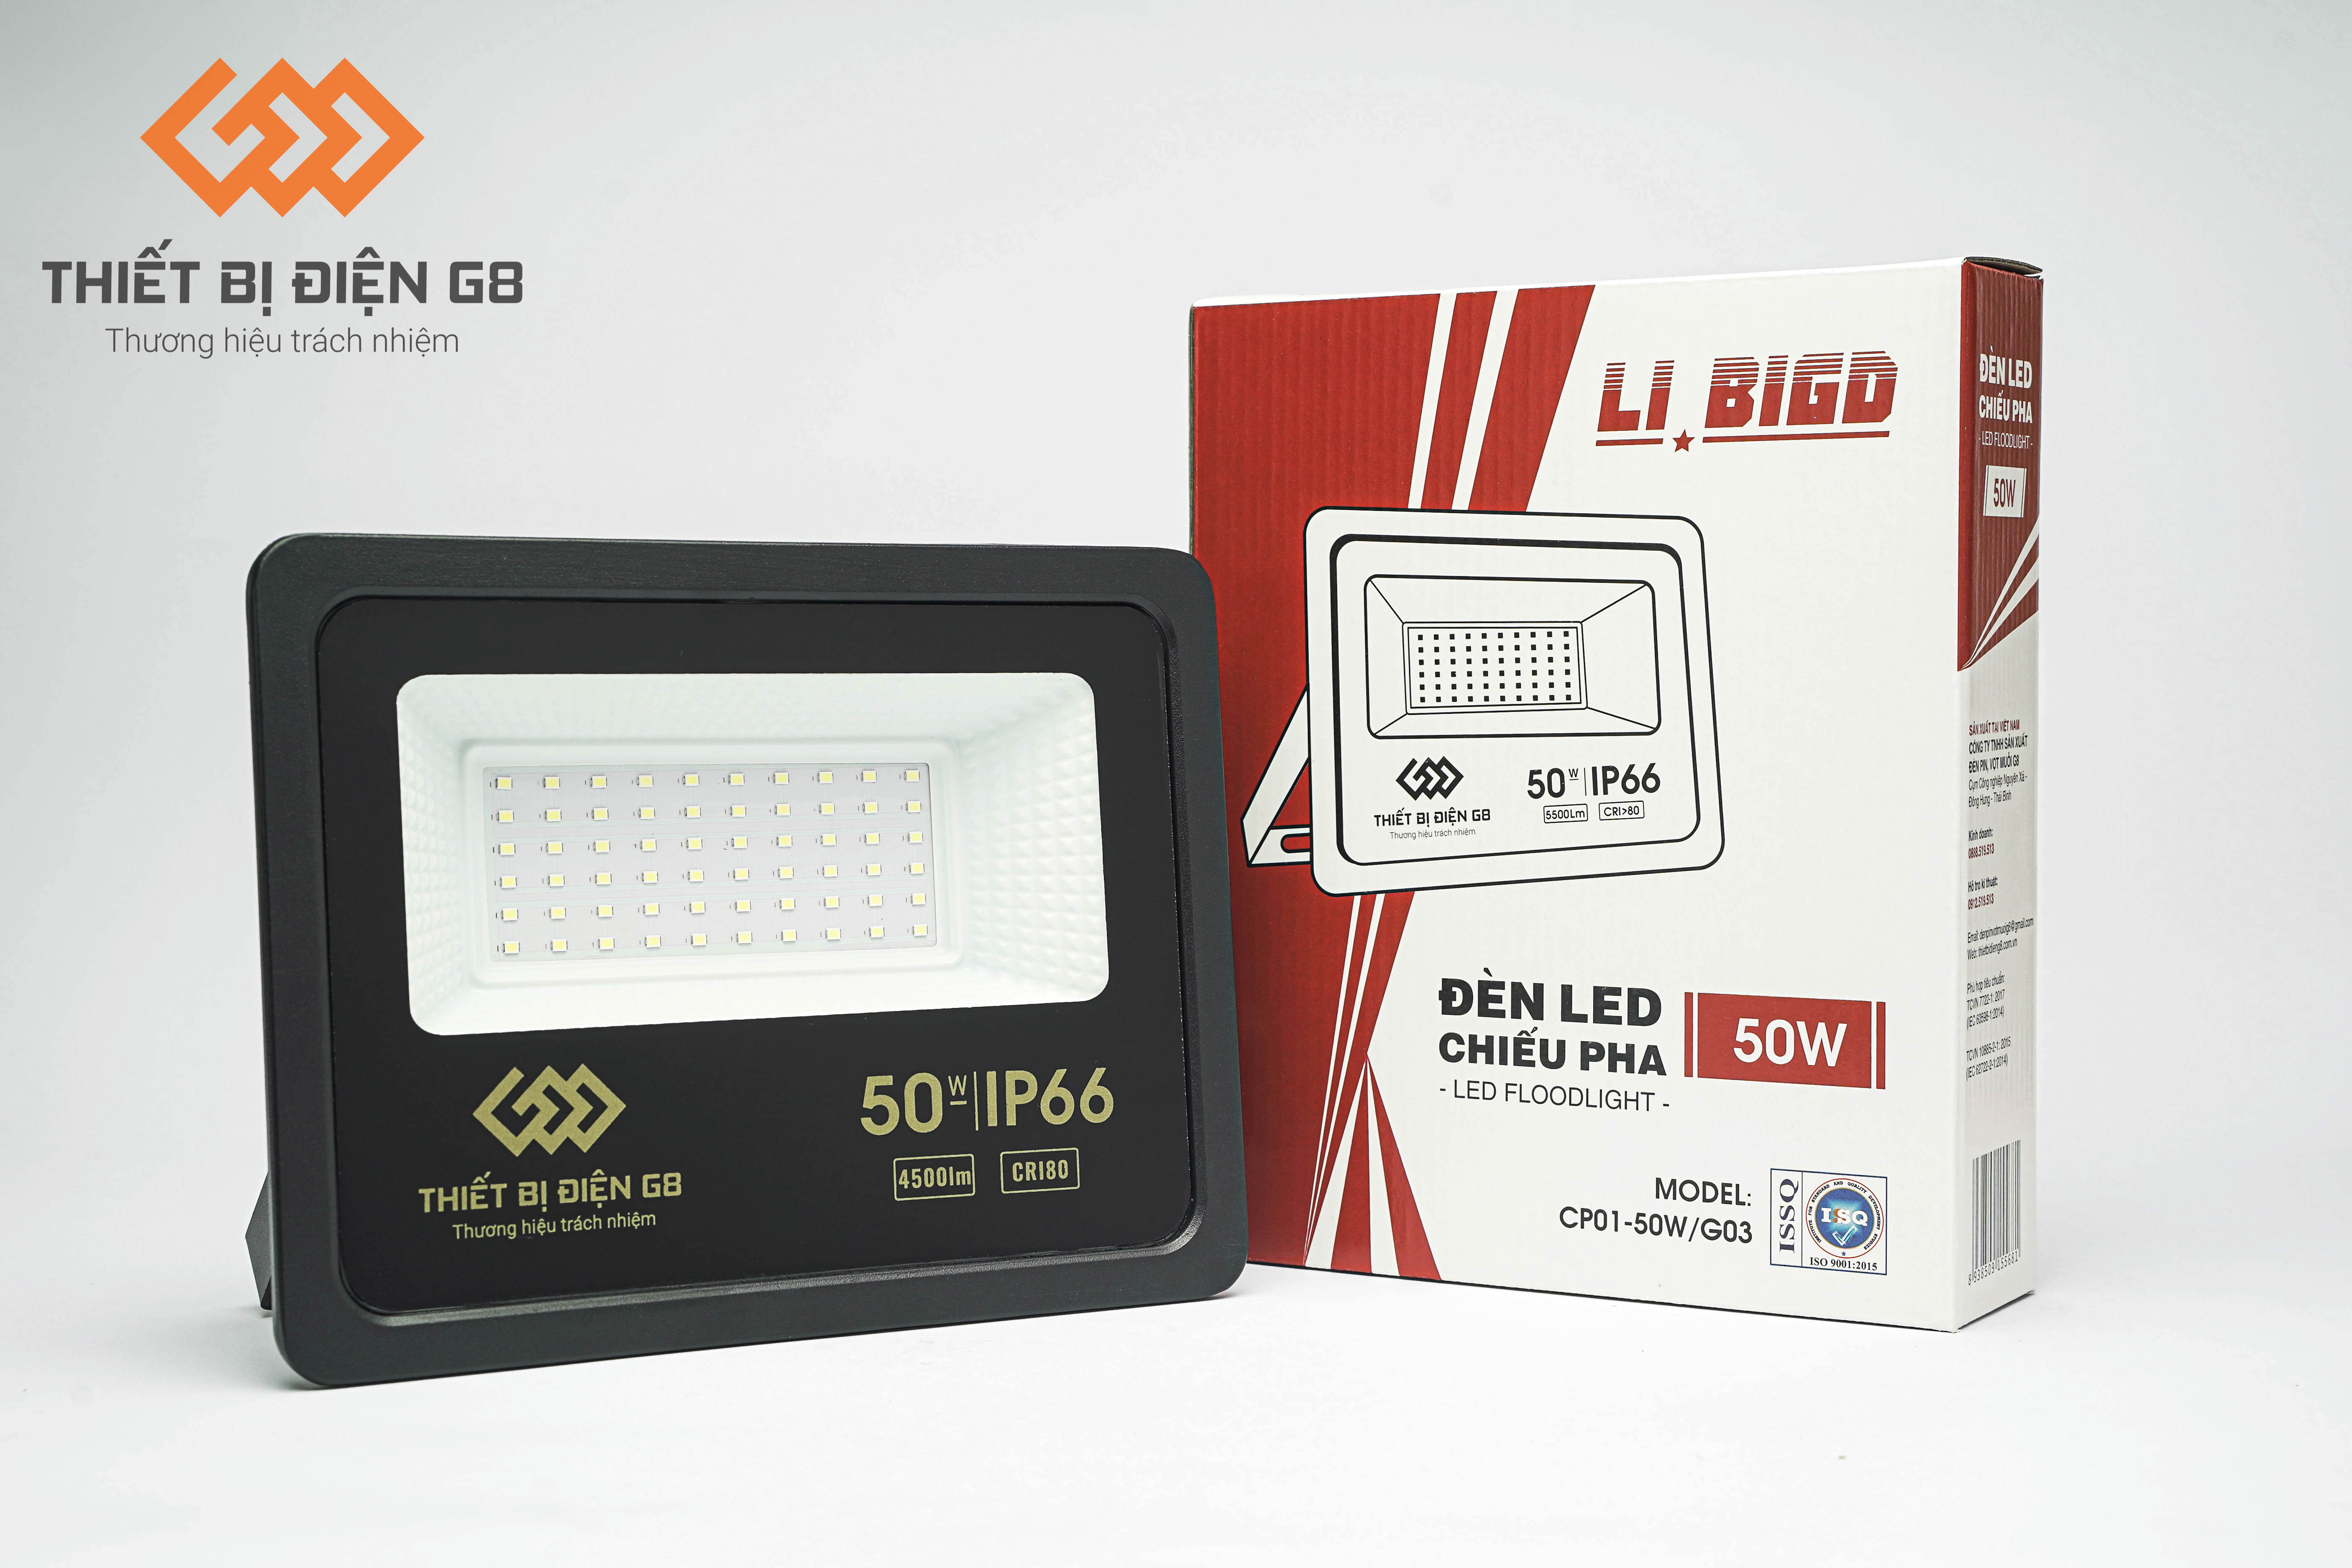 Đèn pin, vợt muỗi, đèn led libigd g8, đèn led chiếu pha g8